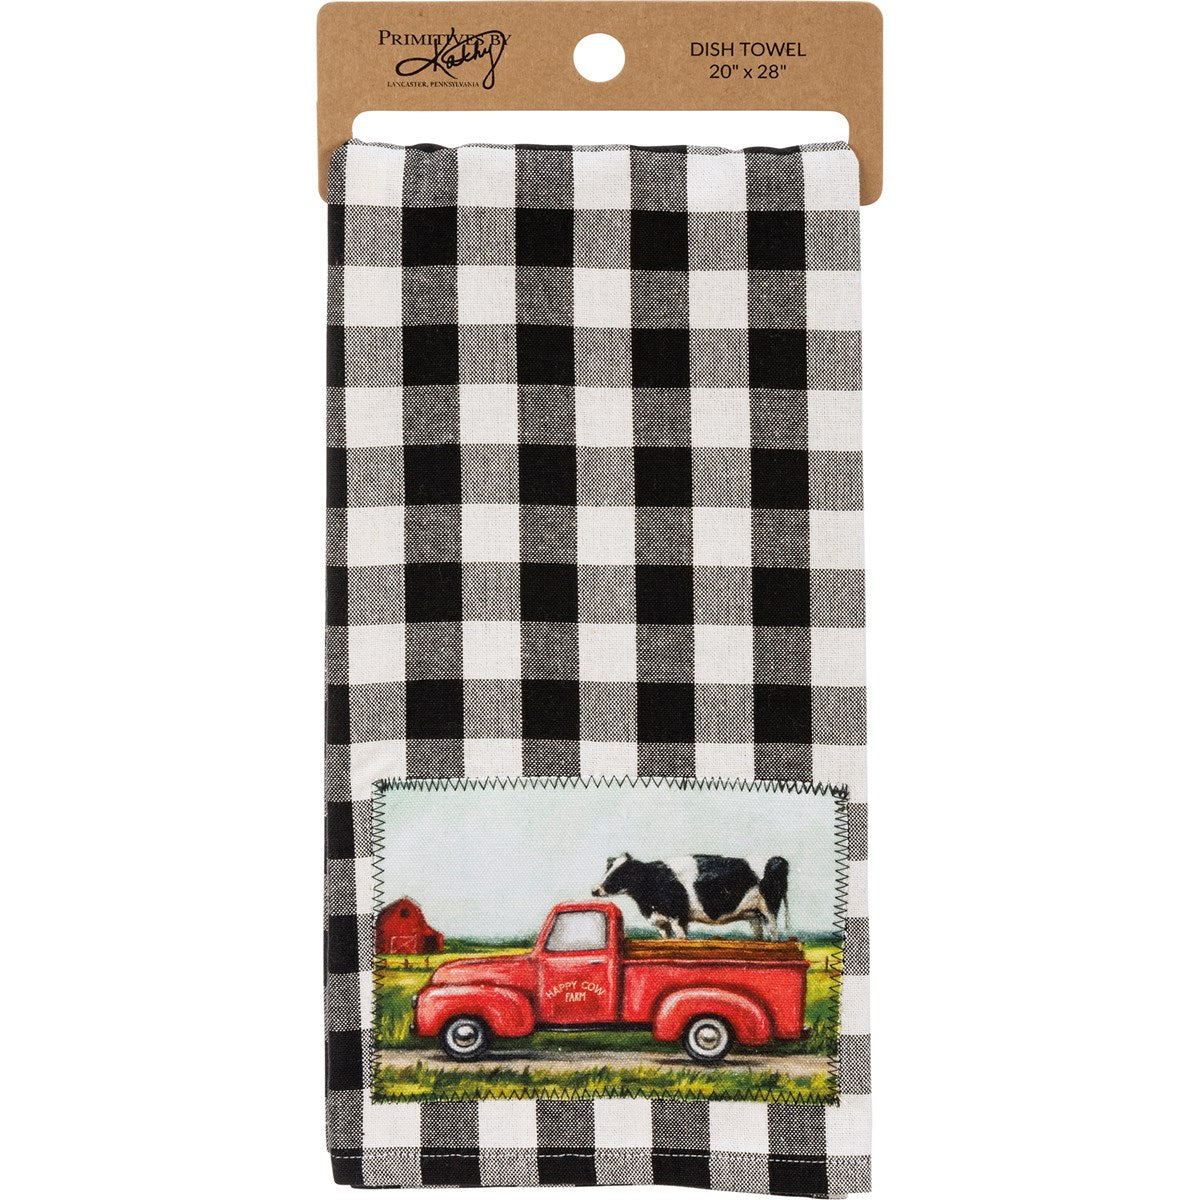 Happy Cow in Farm Truck Kitchen Towel